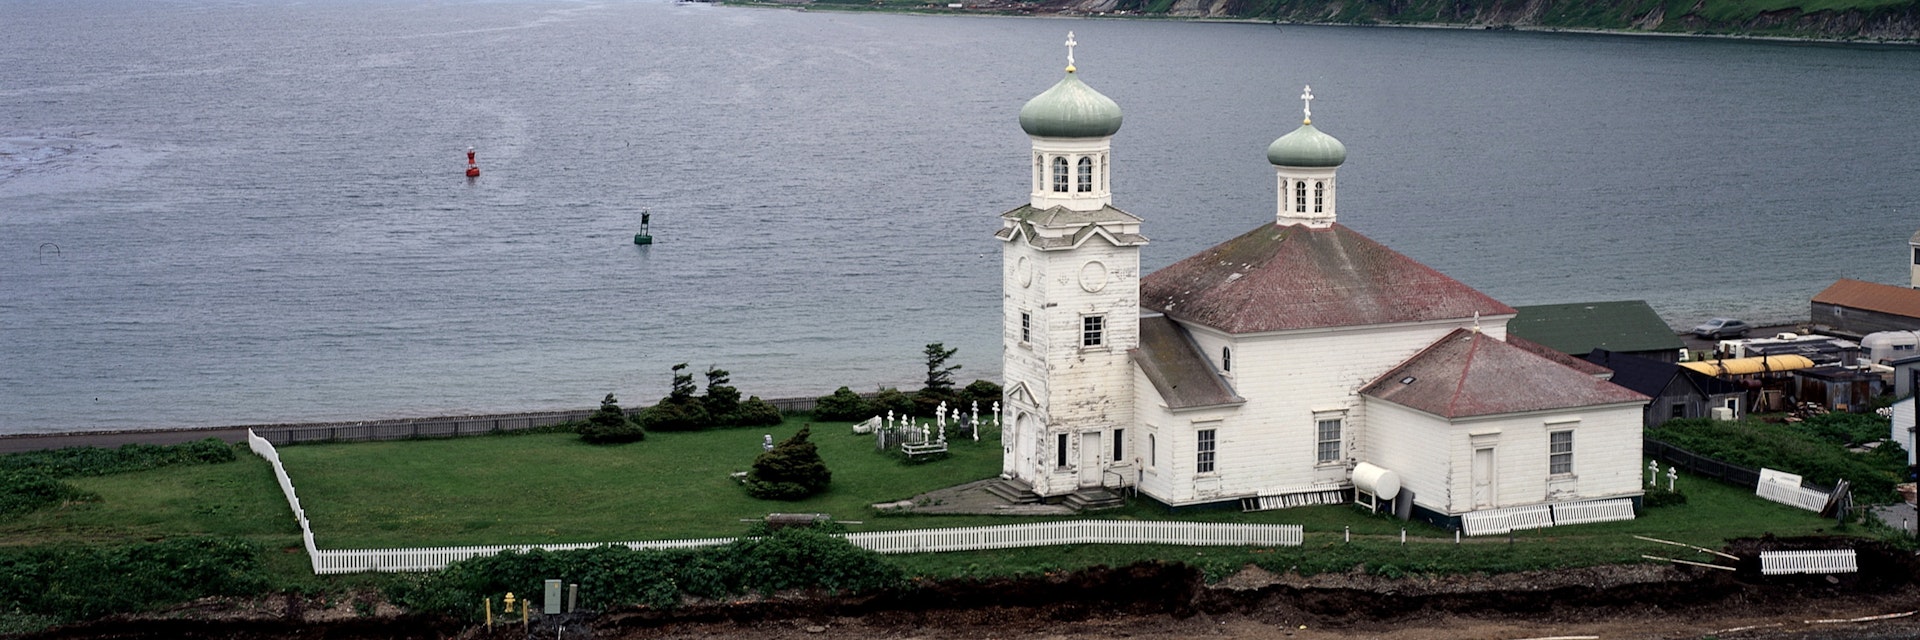 (GERMANY OUT) Aleuten : Unalaska, Dutch Harbour :Russisch-orthodoxe Kirche undErinnerungsstätte (Photo by Kanus/ullstein bild via Getty Images)